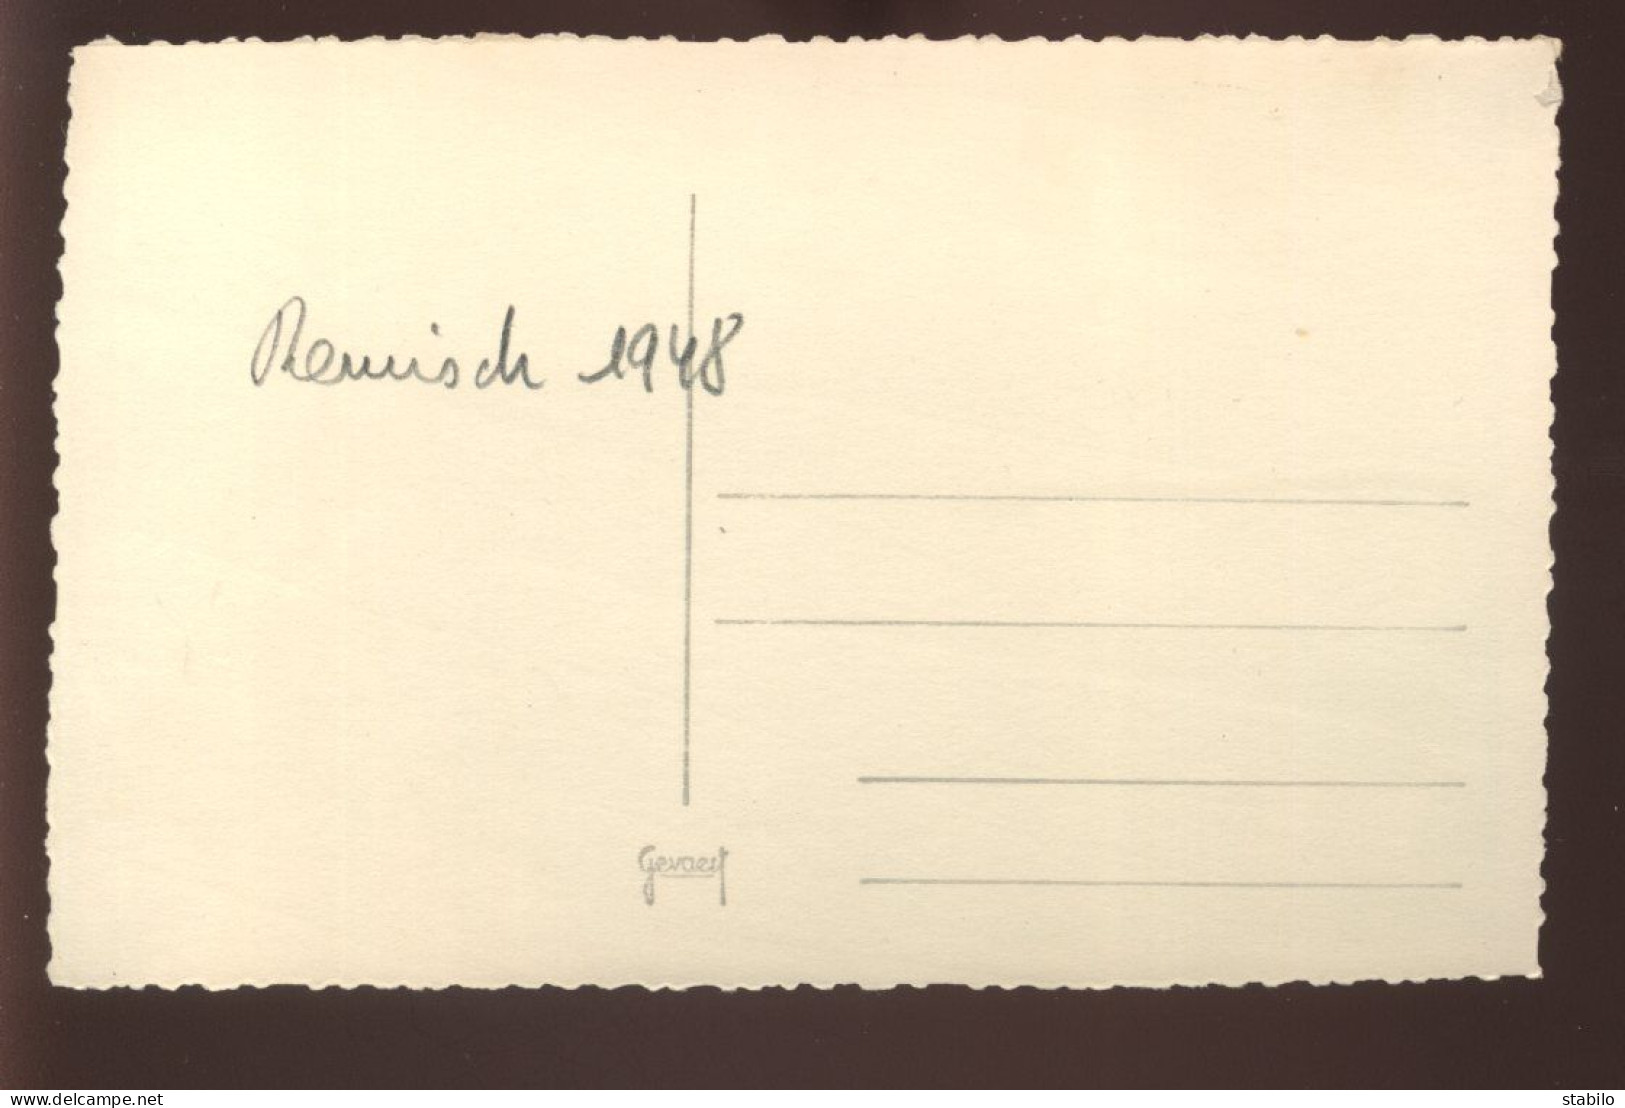 LUXEMBOURG - REMISCH - VENTE DE RAISINS - 1948 - FORMAT 13 X 8.5 CM - Lugares